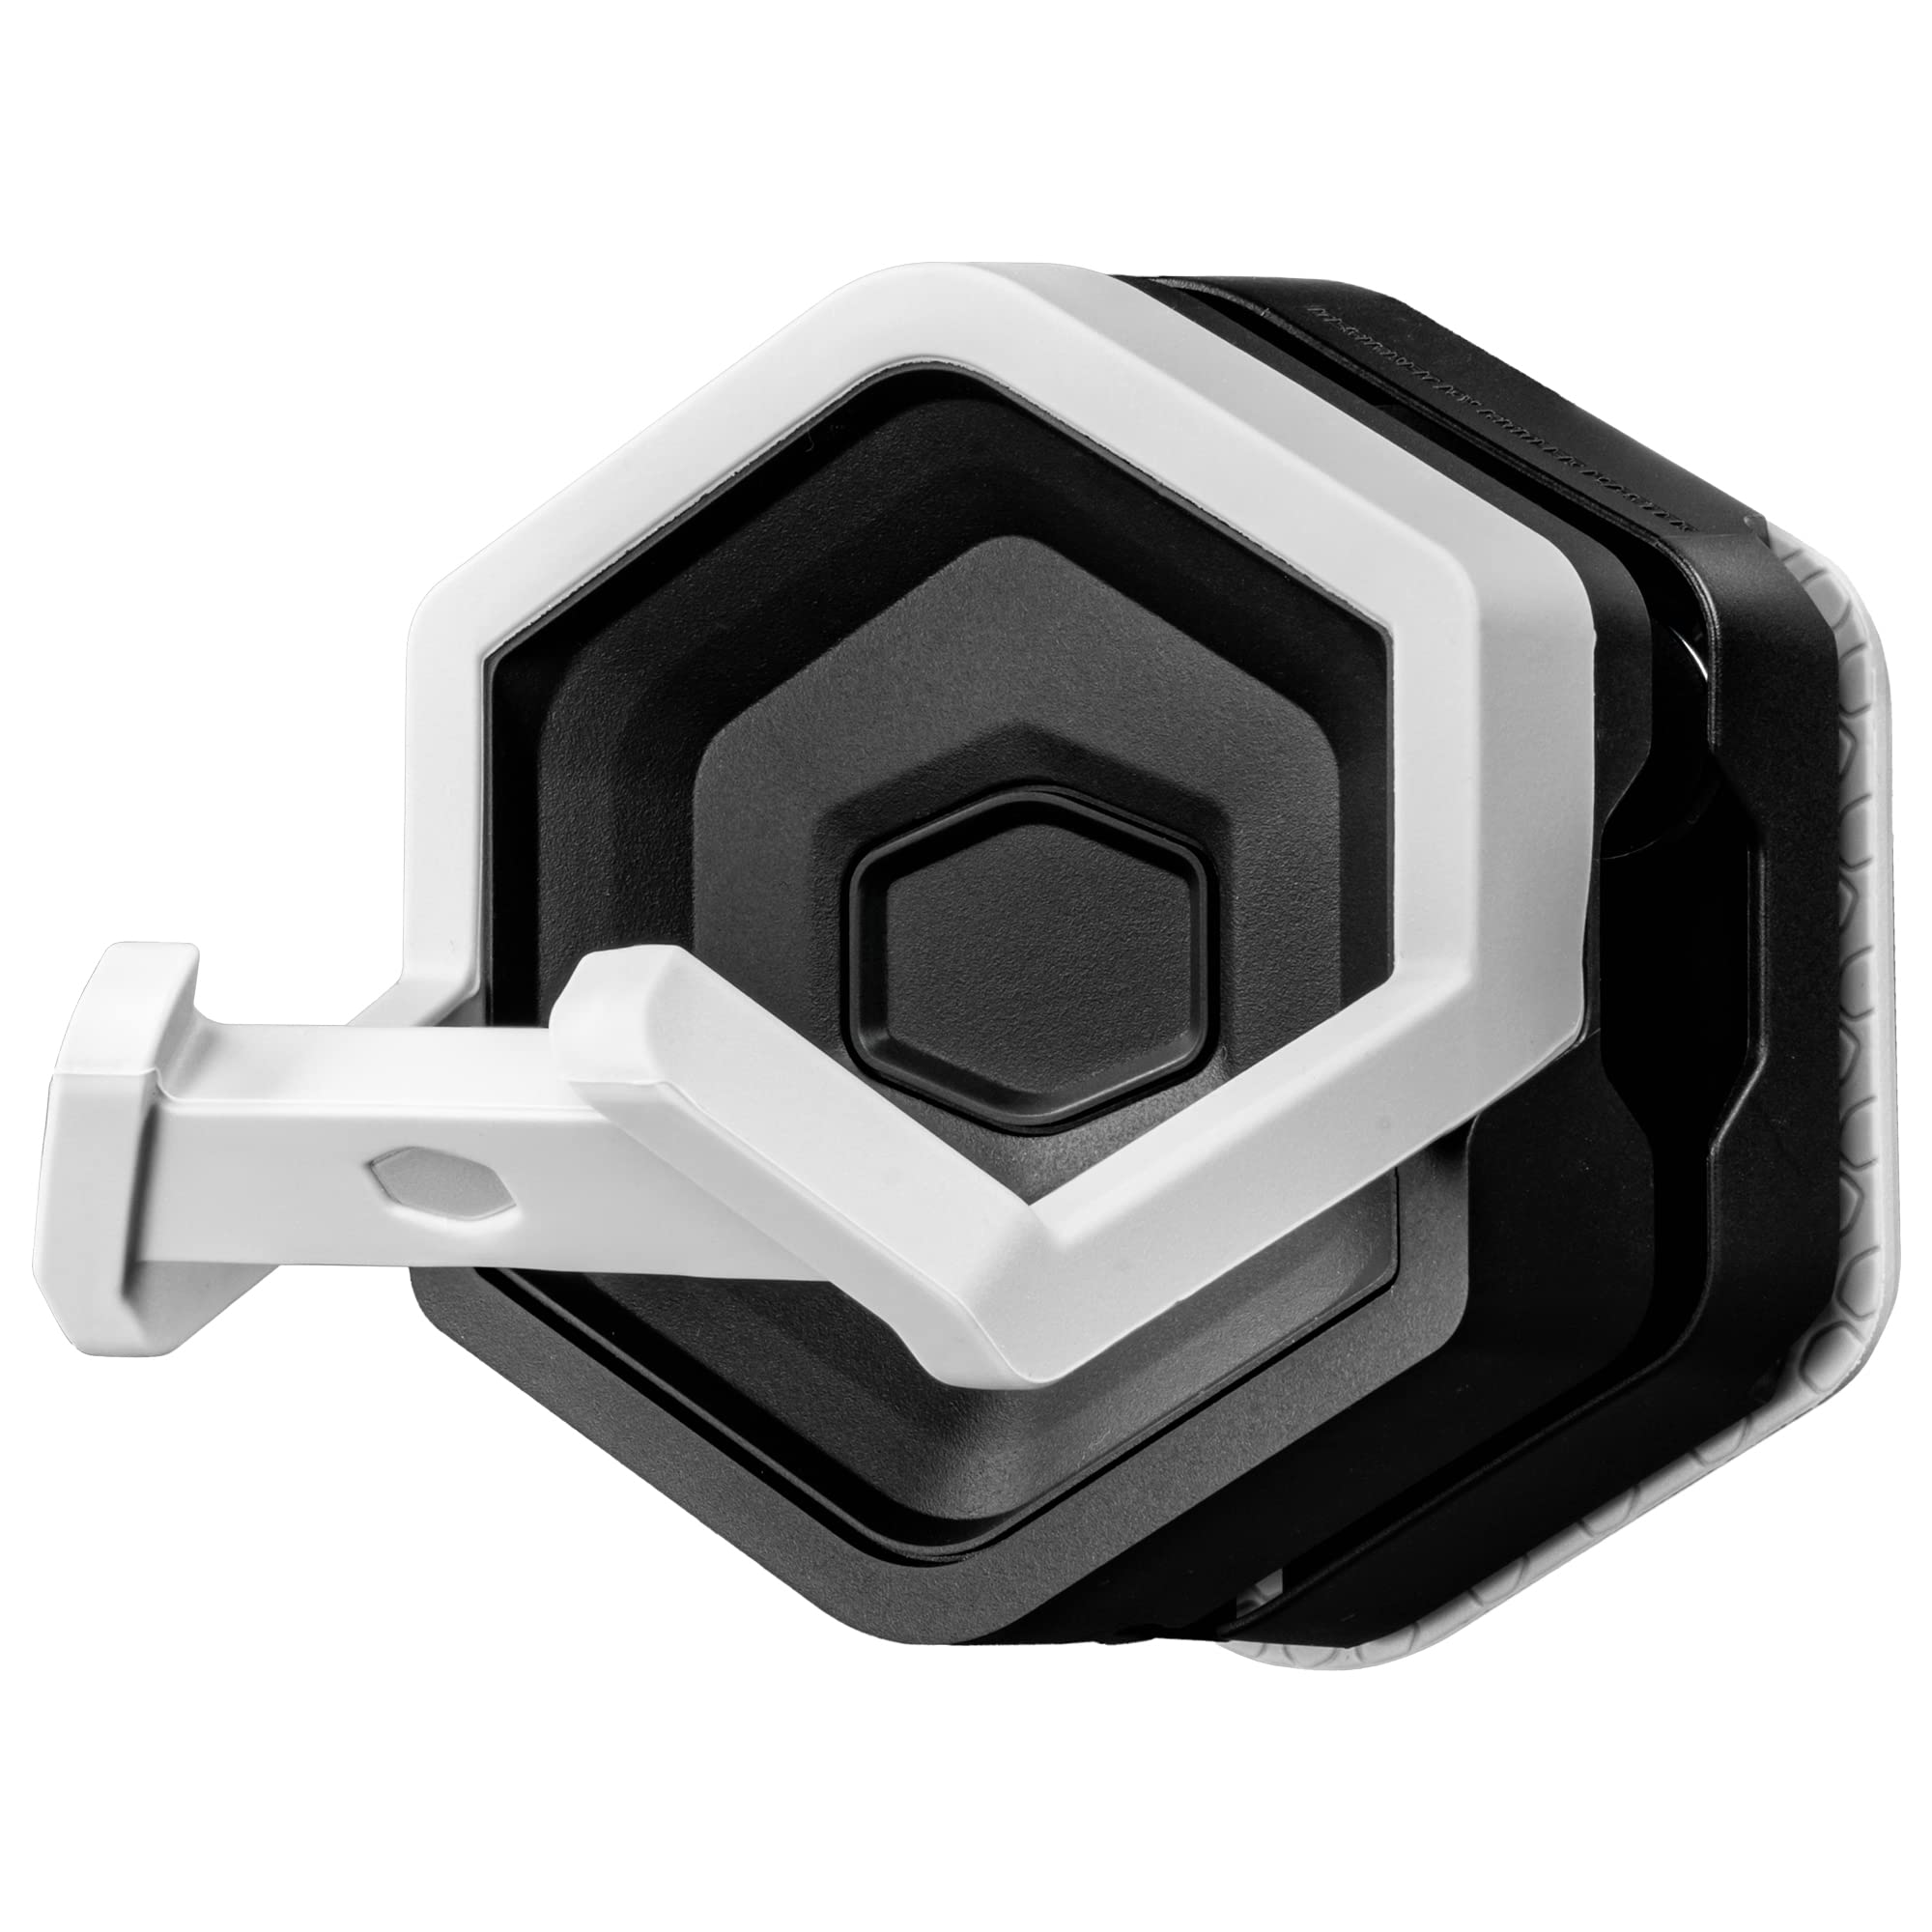 Parfait Cooler Master GEM Support pour Périphériques Gaming (Casque, Contôleur, Clavier, etc.) - Crochet Multi-Usage avec Fixation Magnétique pour Surfaces Métalliques ou non (jusqu´à 4mm d´épaisseur) - Noir R0UuGLQ1B boutique en ligne